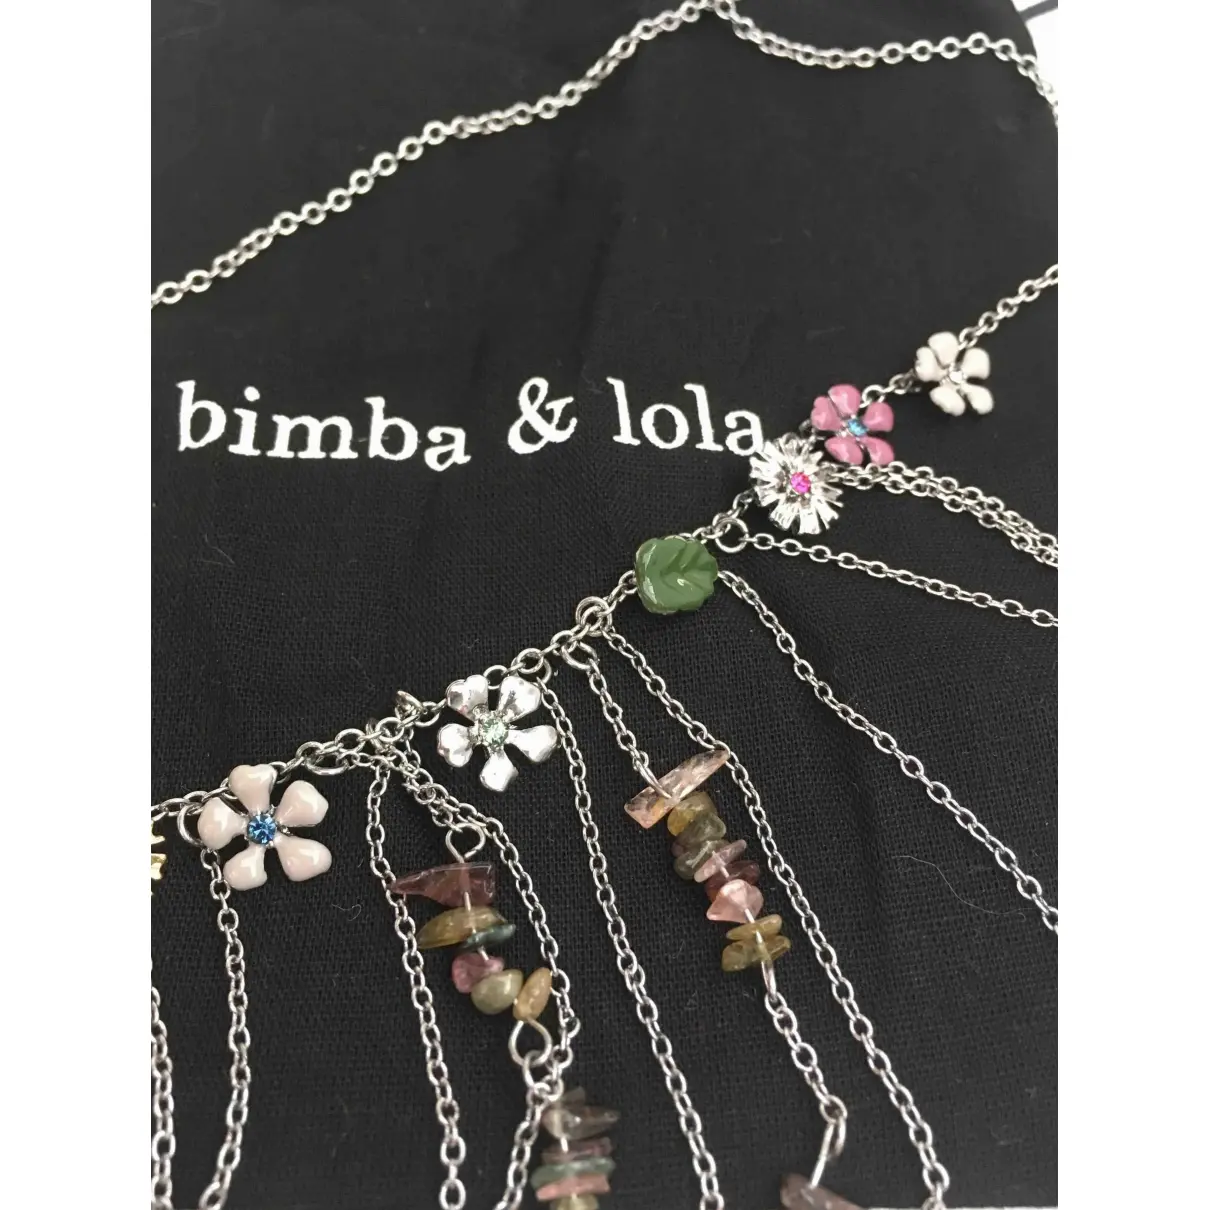 Buy Bimba y Lola Necklace online